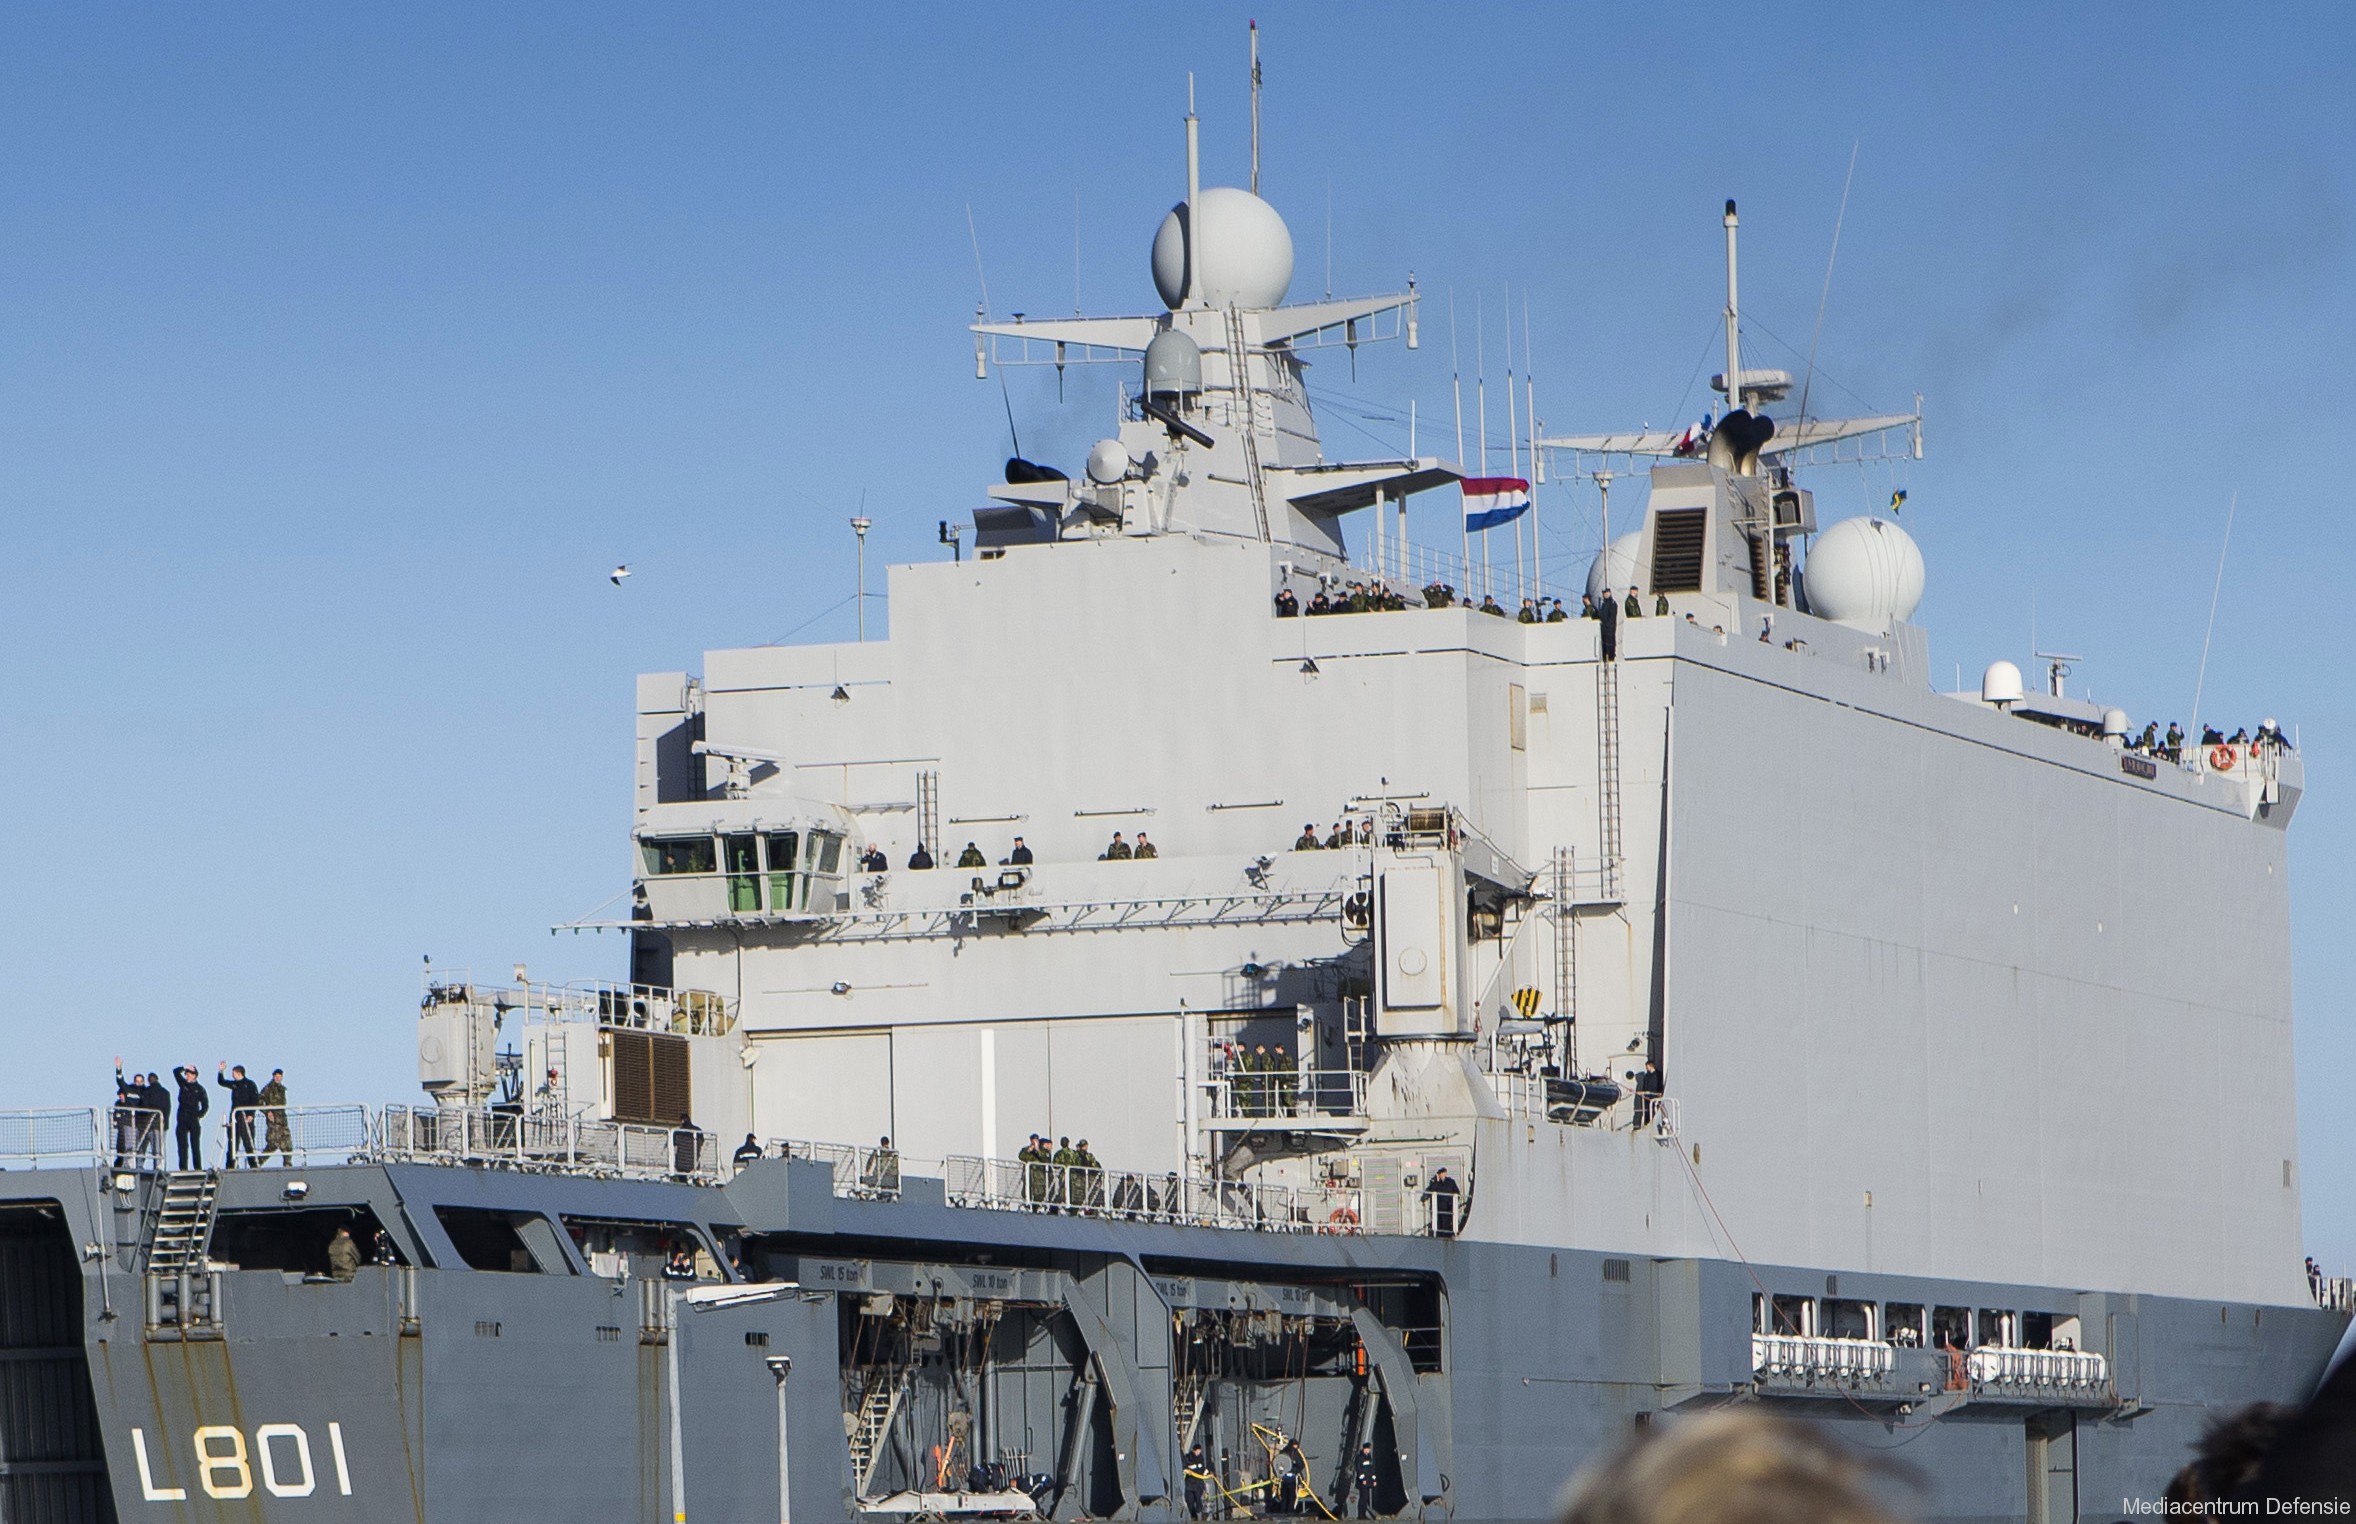 l-801 hnlms johan de witt amphibious ship landing platform dock lpd royal netherlands navy 02